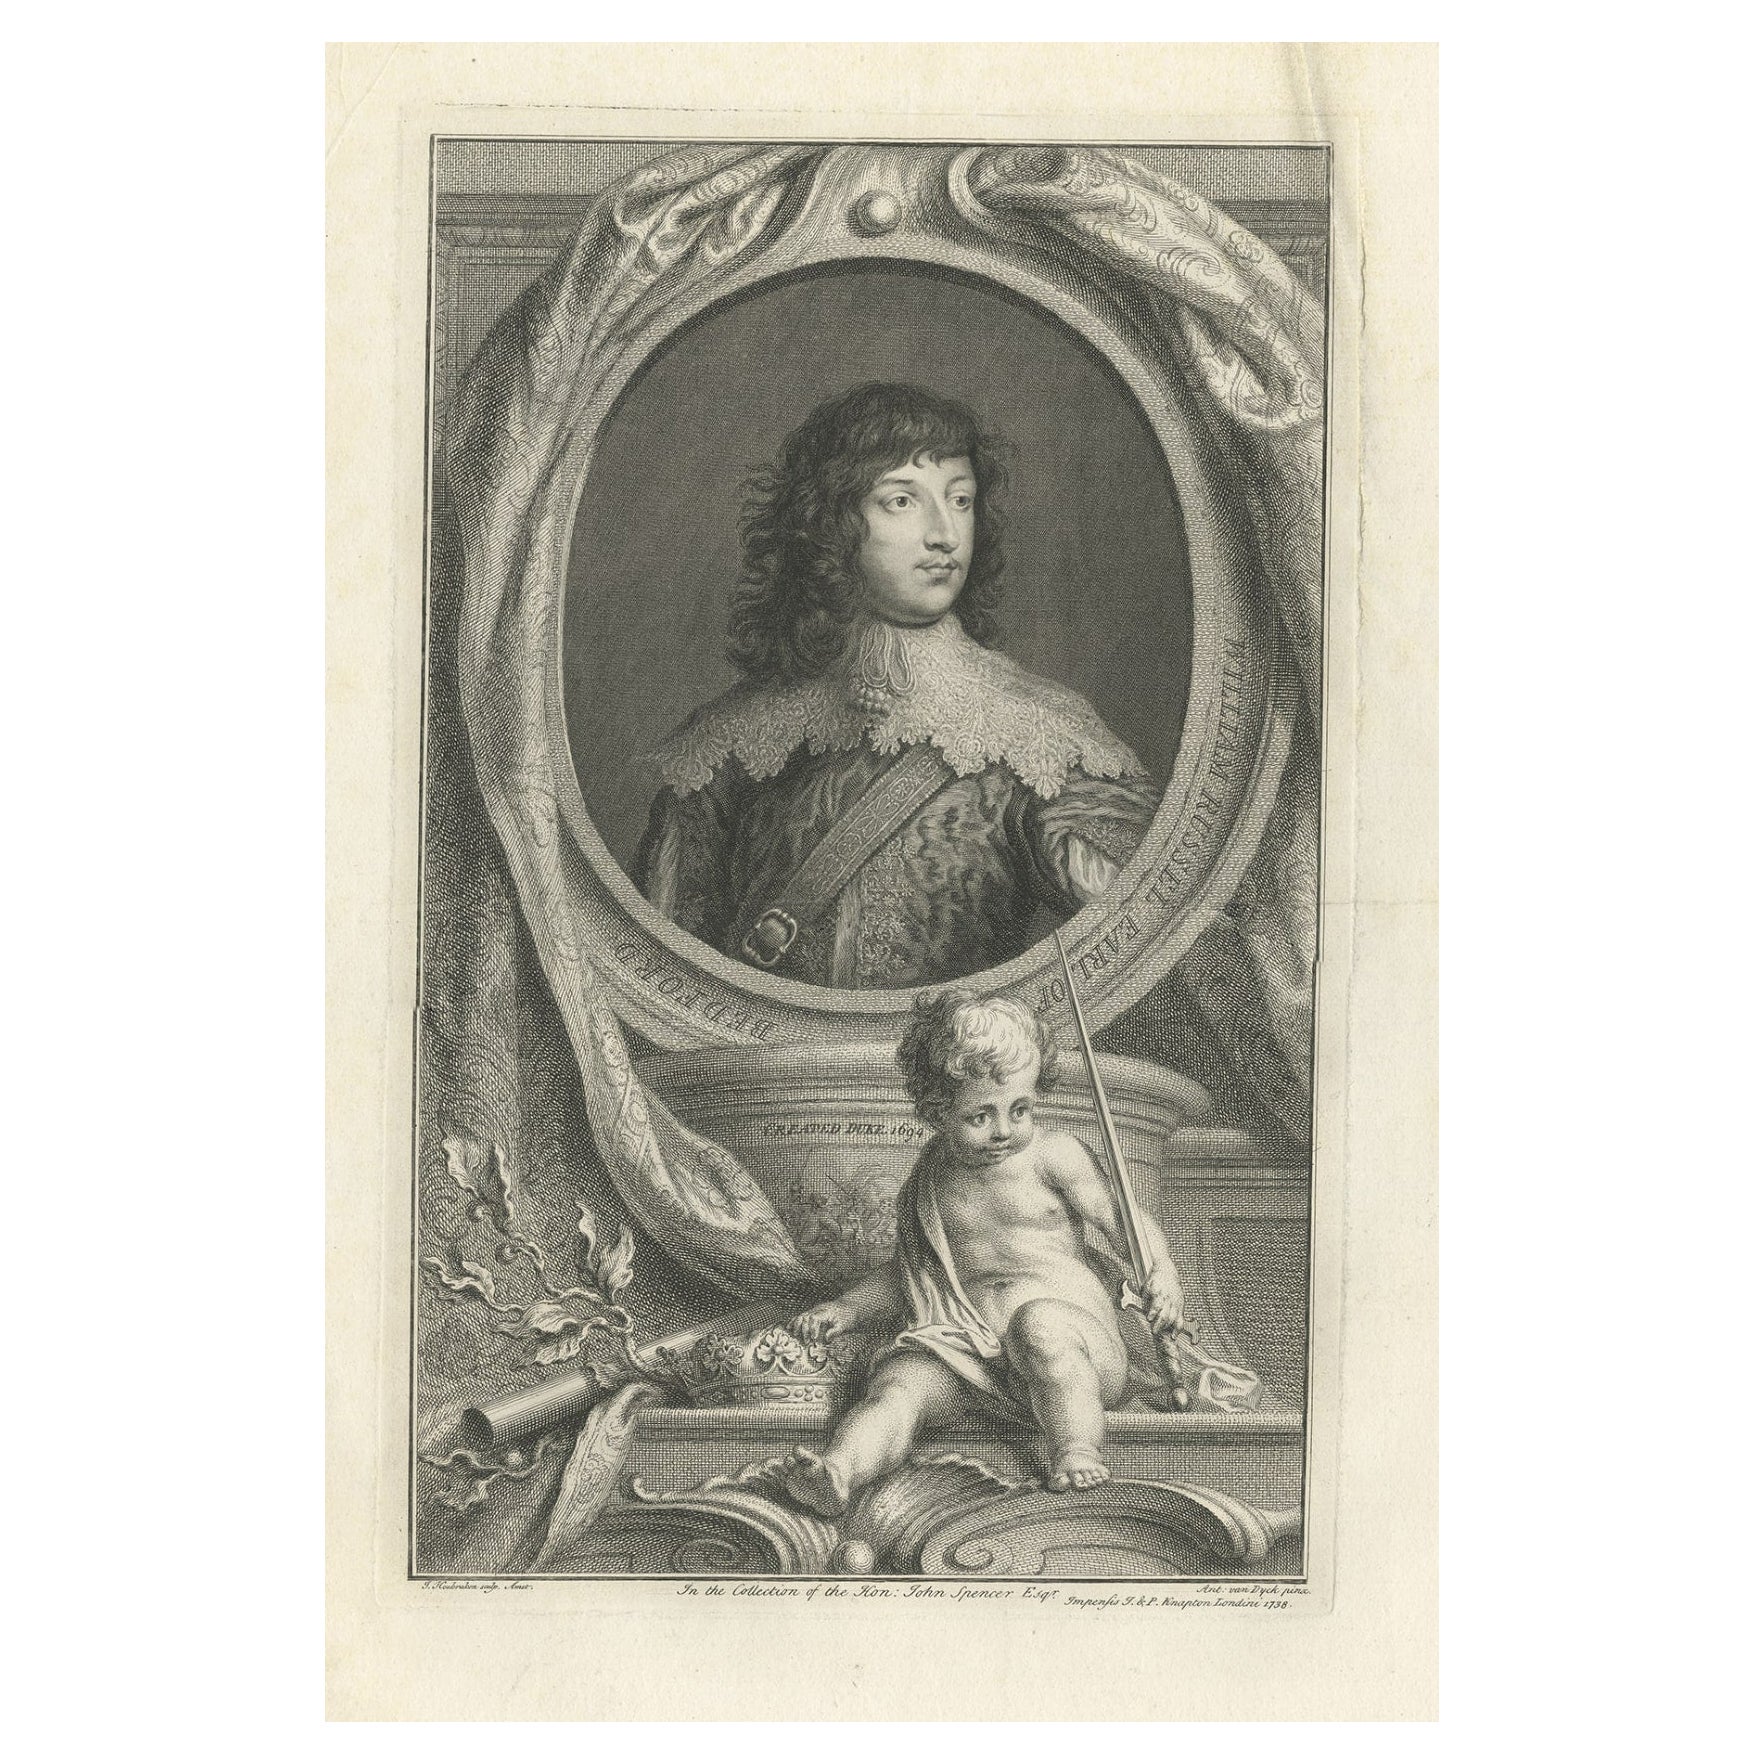 Portrait de William Russell, un noble et homme politique anglais, comte de Bedford